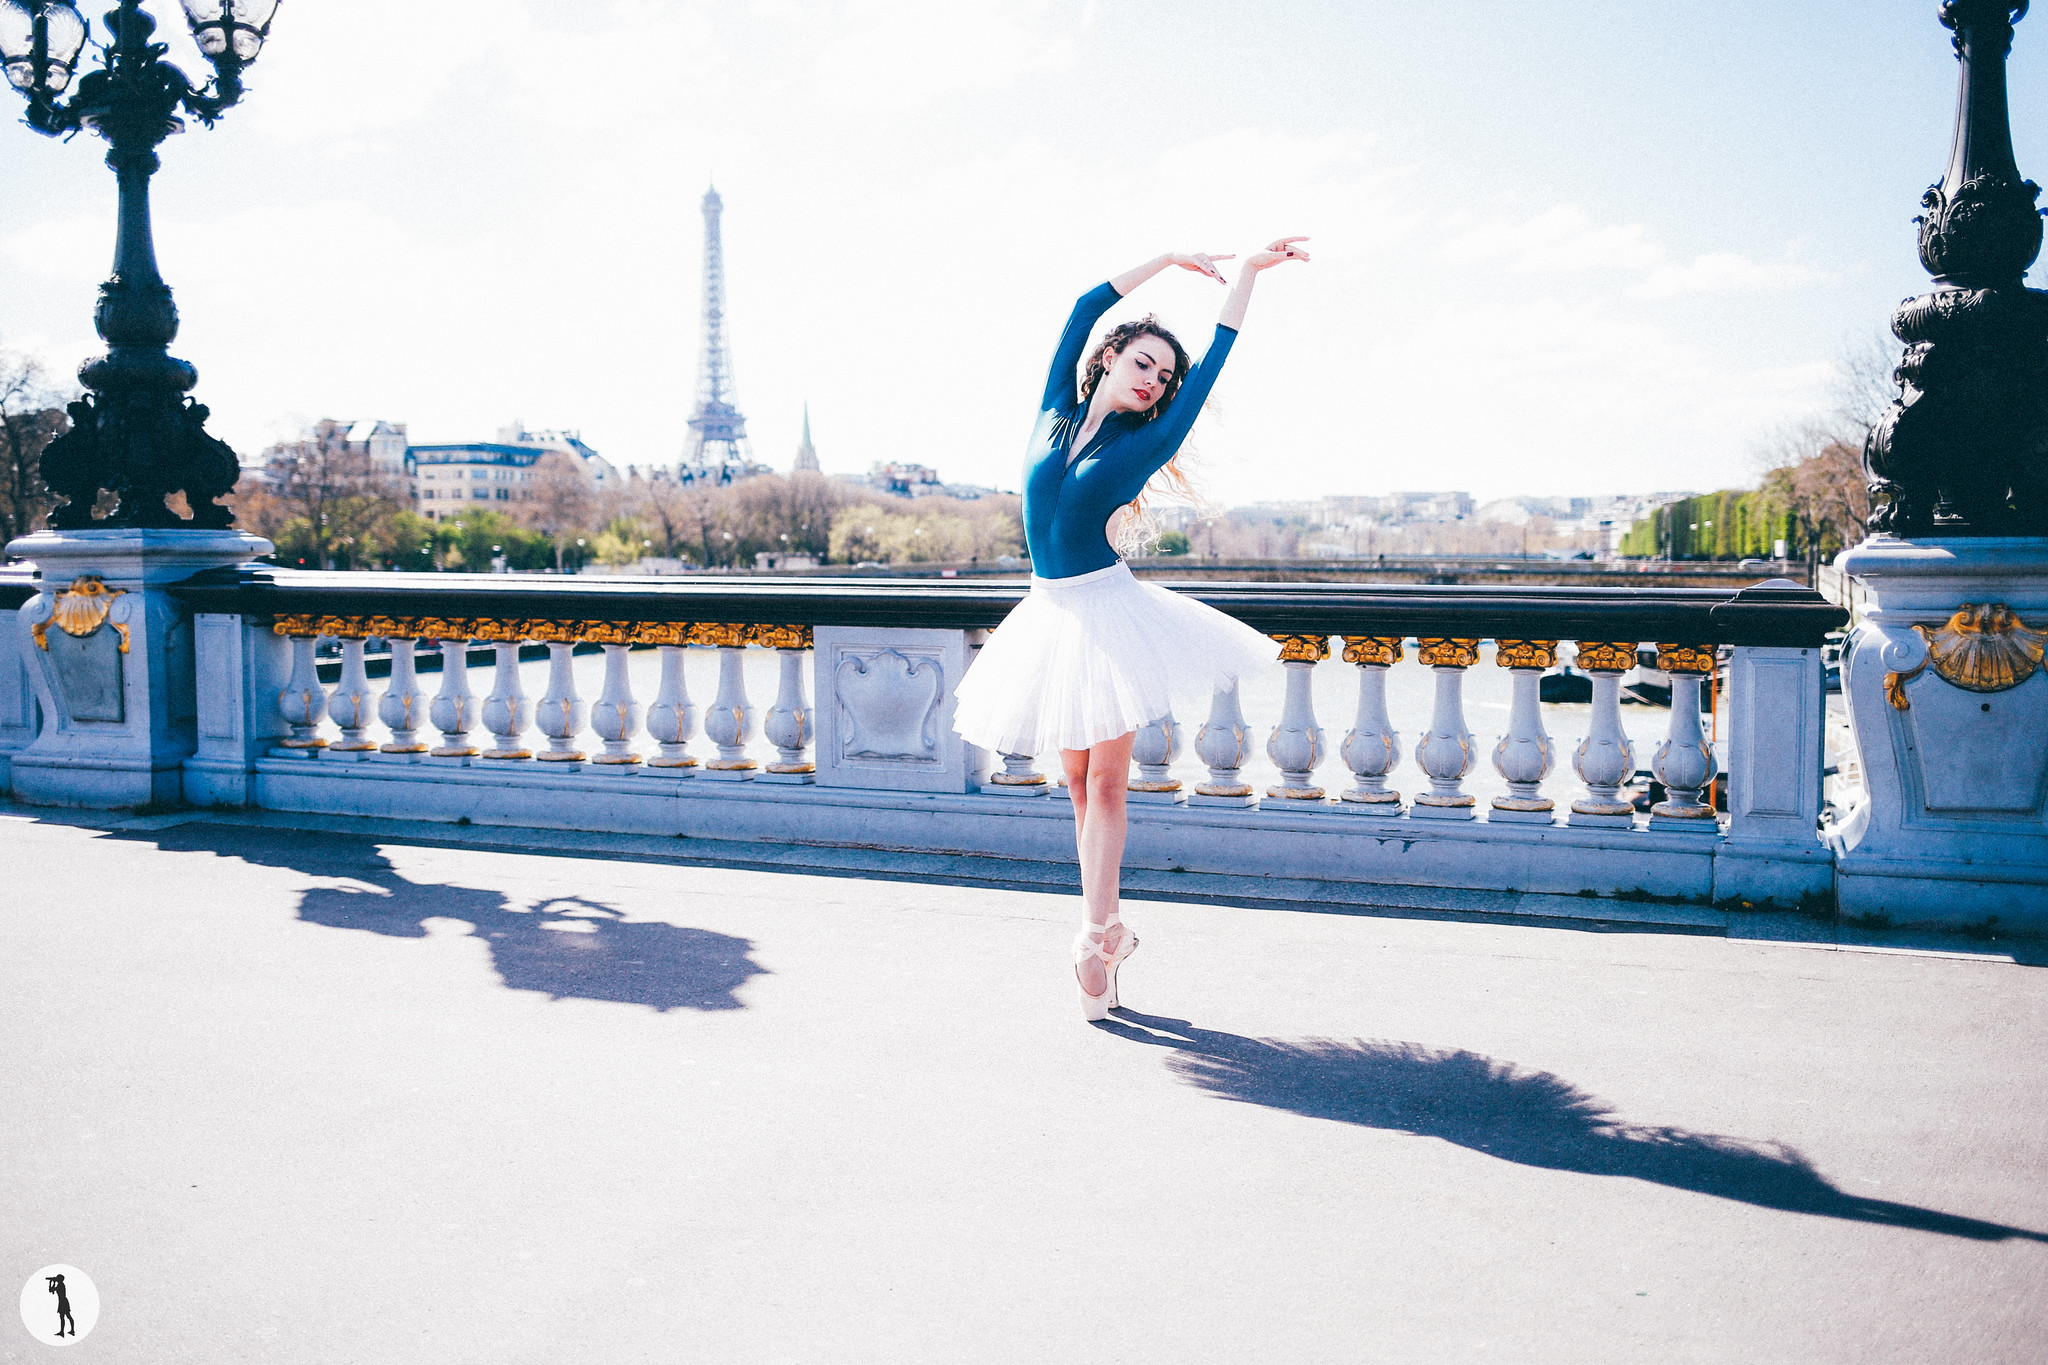 Ballet dancers from Opera Paris School. Danseuses classiques de l'école de l'opéra de Paris. Photo shooting by Marie-Paola BERTRAND-HILLION